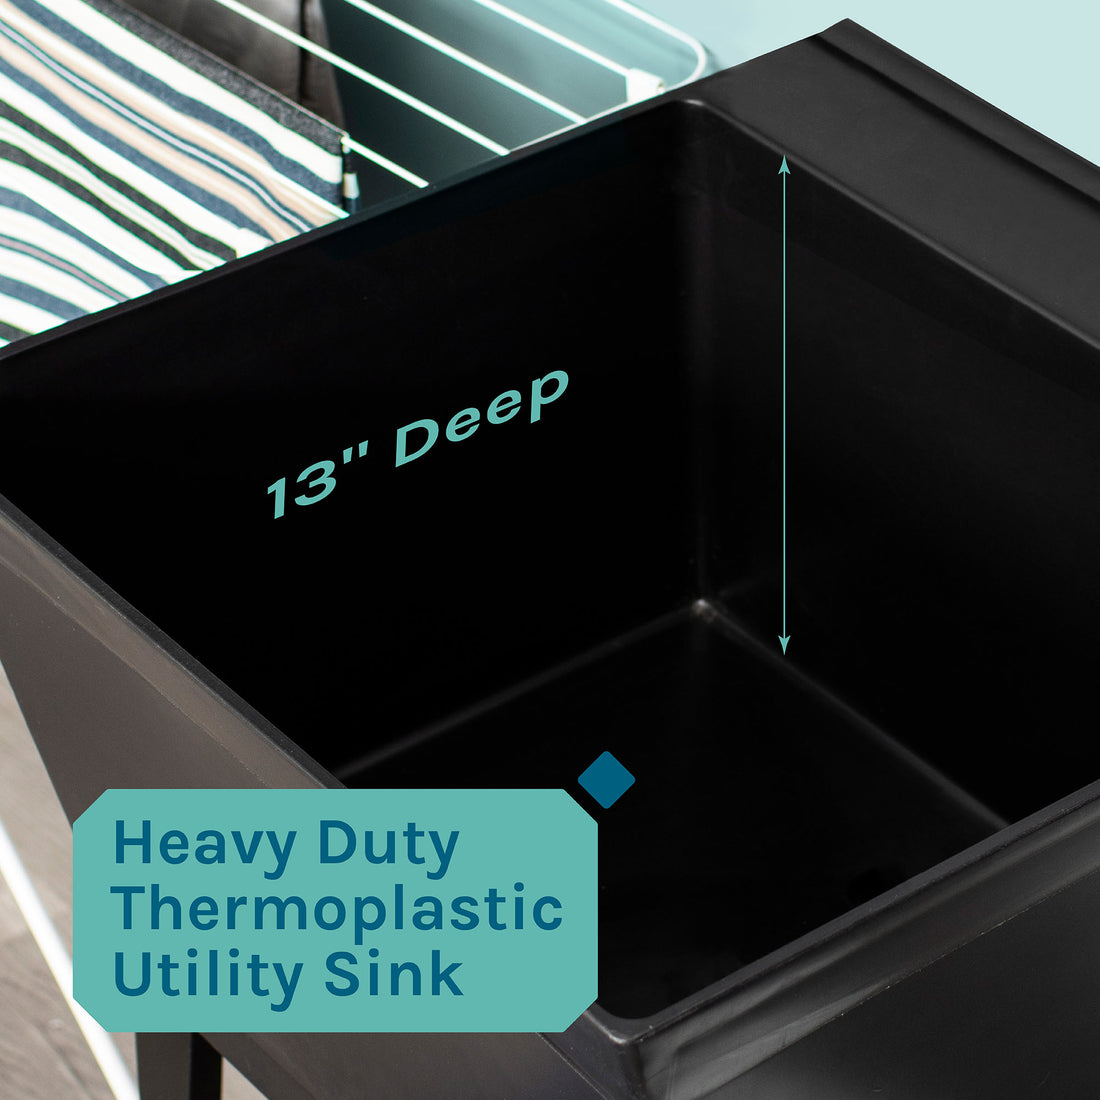 Tehila Standard Freestanding Black Utility Sink with Black Legs, Water Supply Lines Included - Utility sinks vanites Tehila